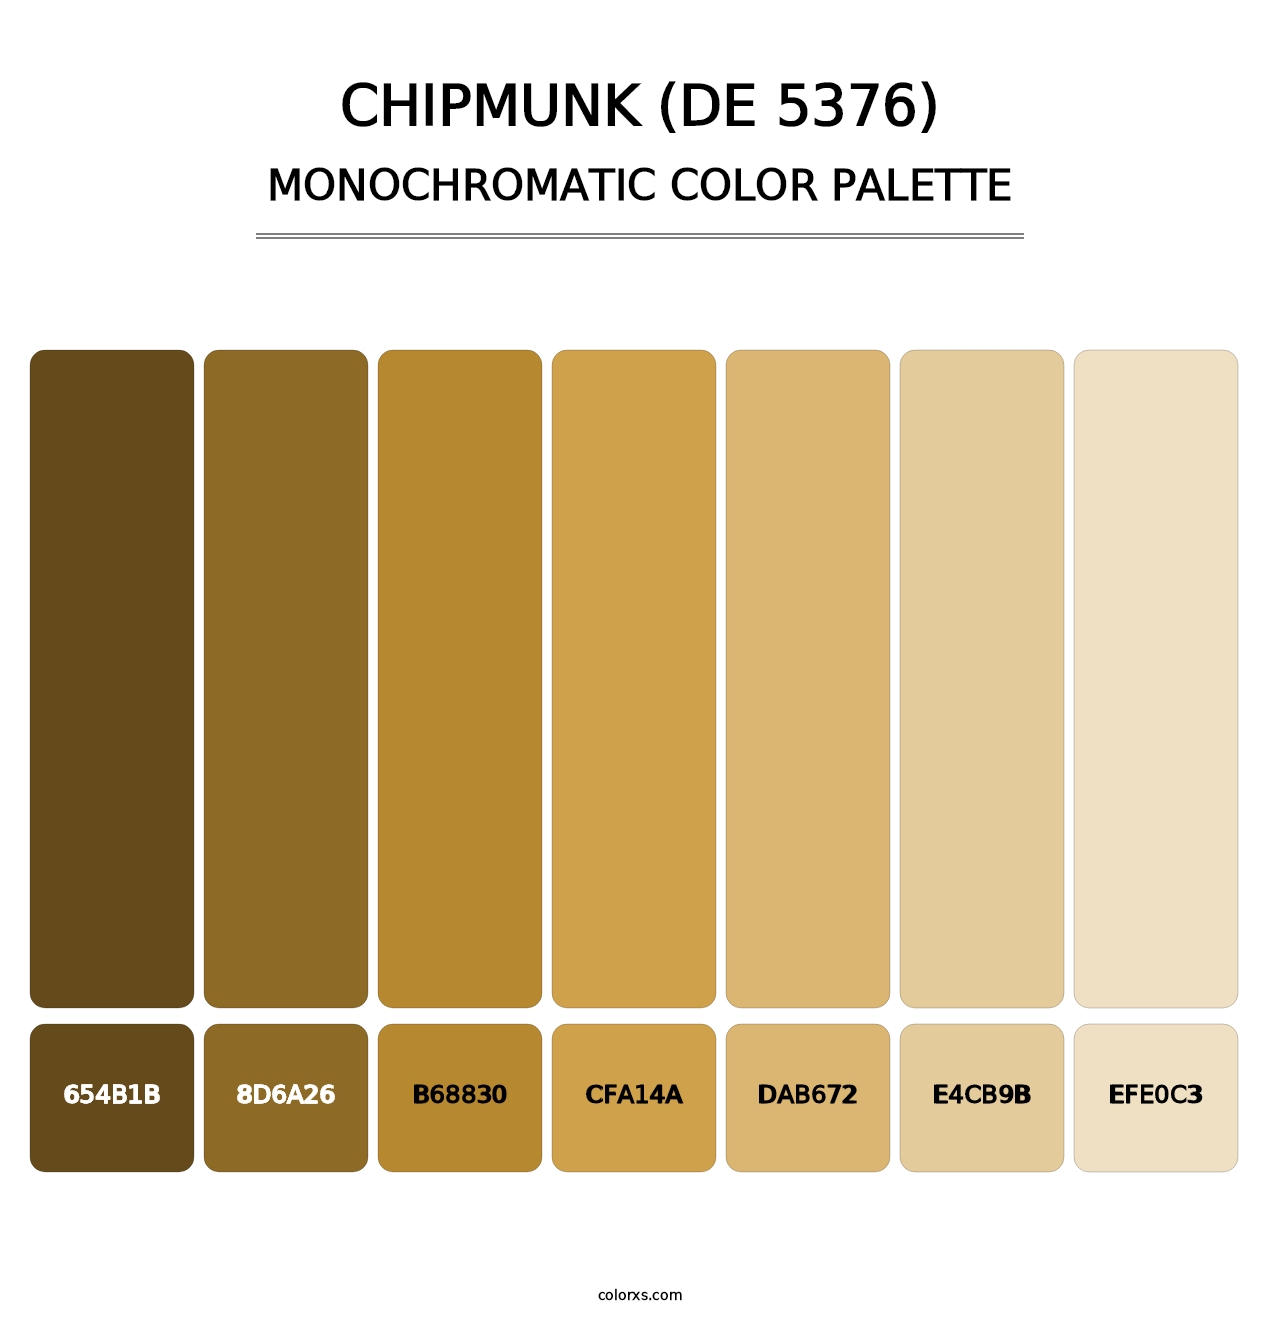 Chipmunk (DE 5376) - Monochromatic Color Palette